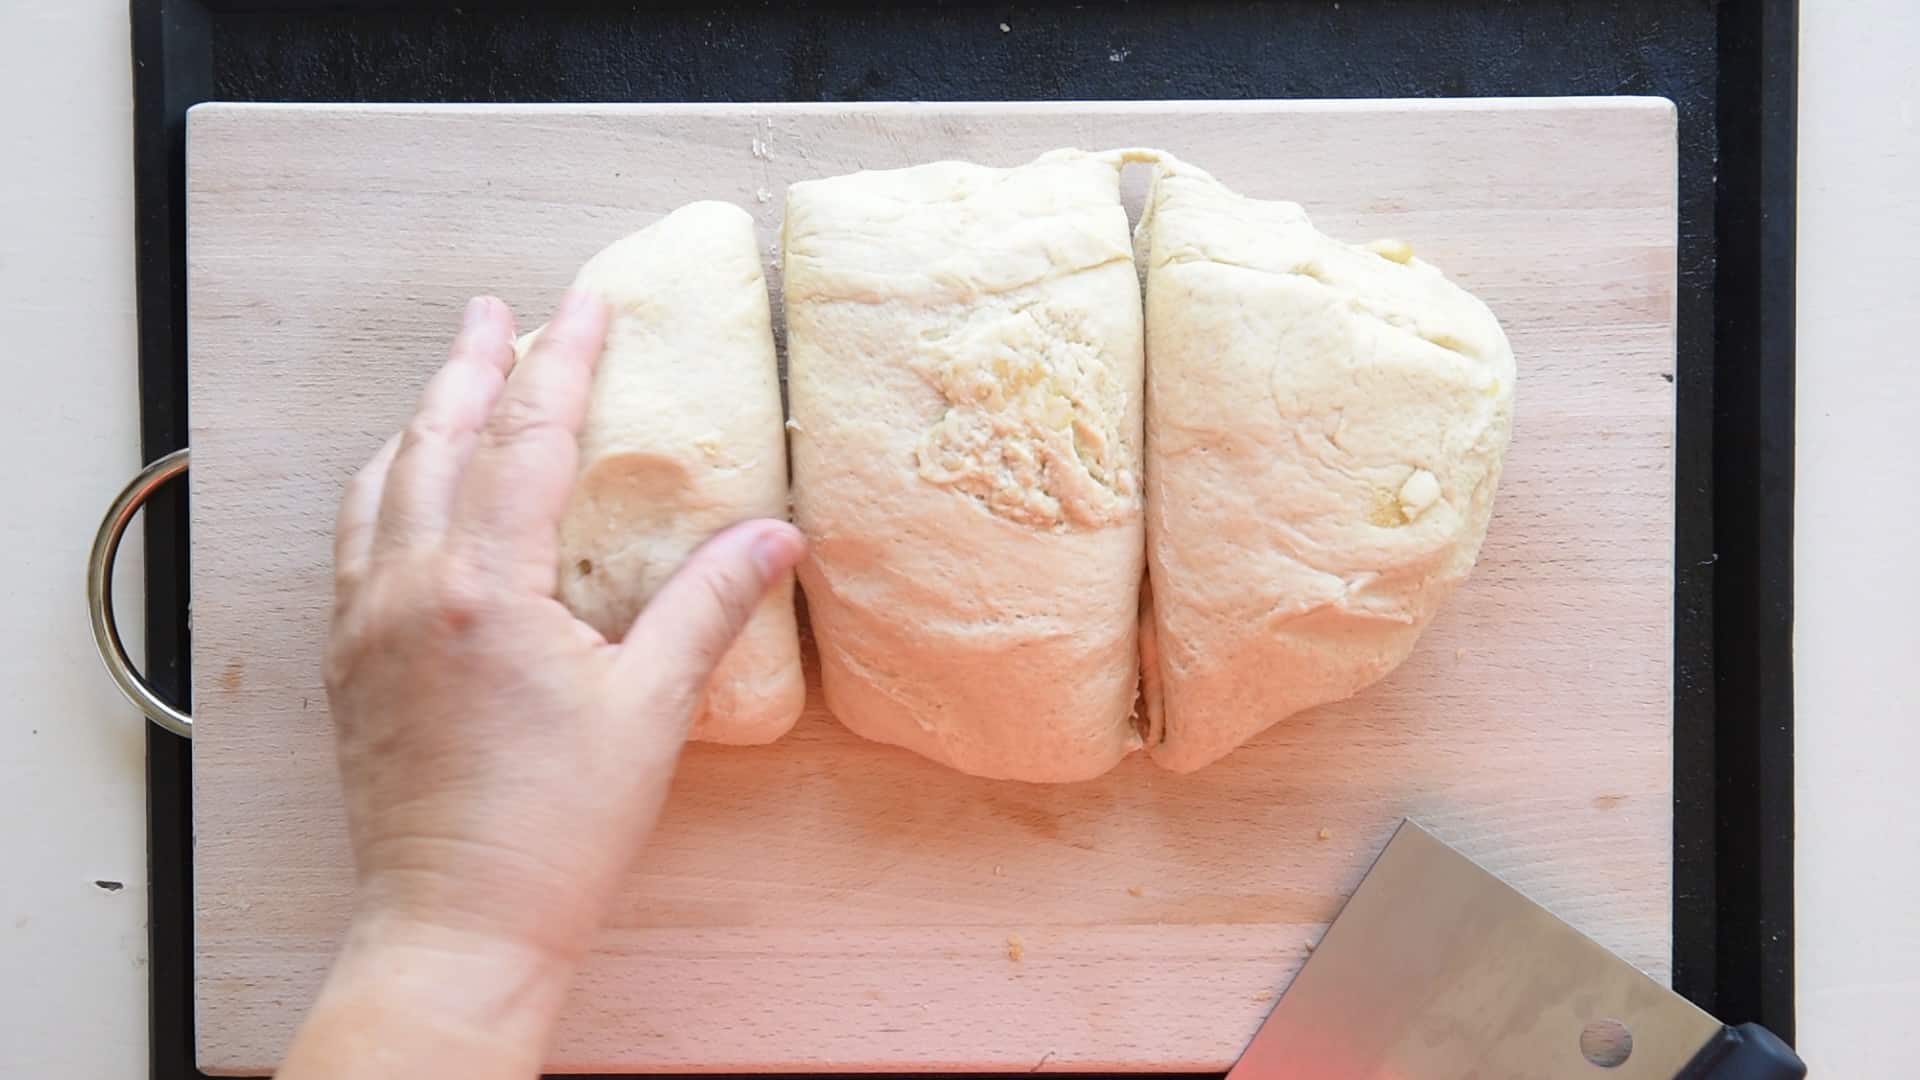 divide the dough into 3 pieces